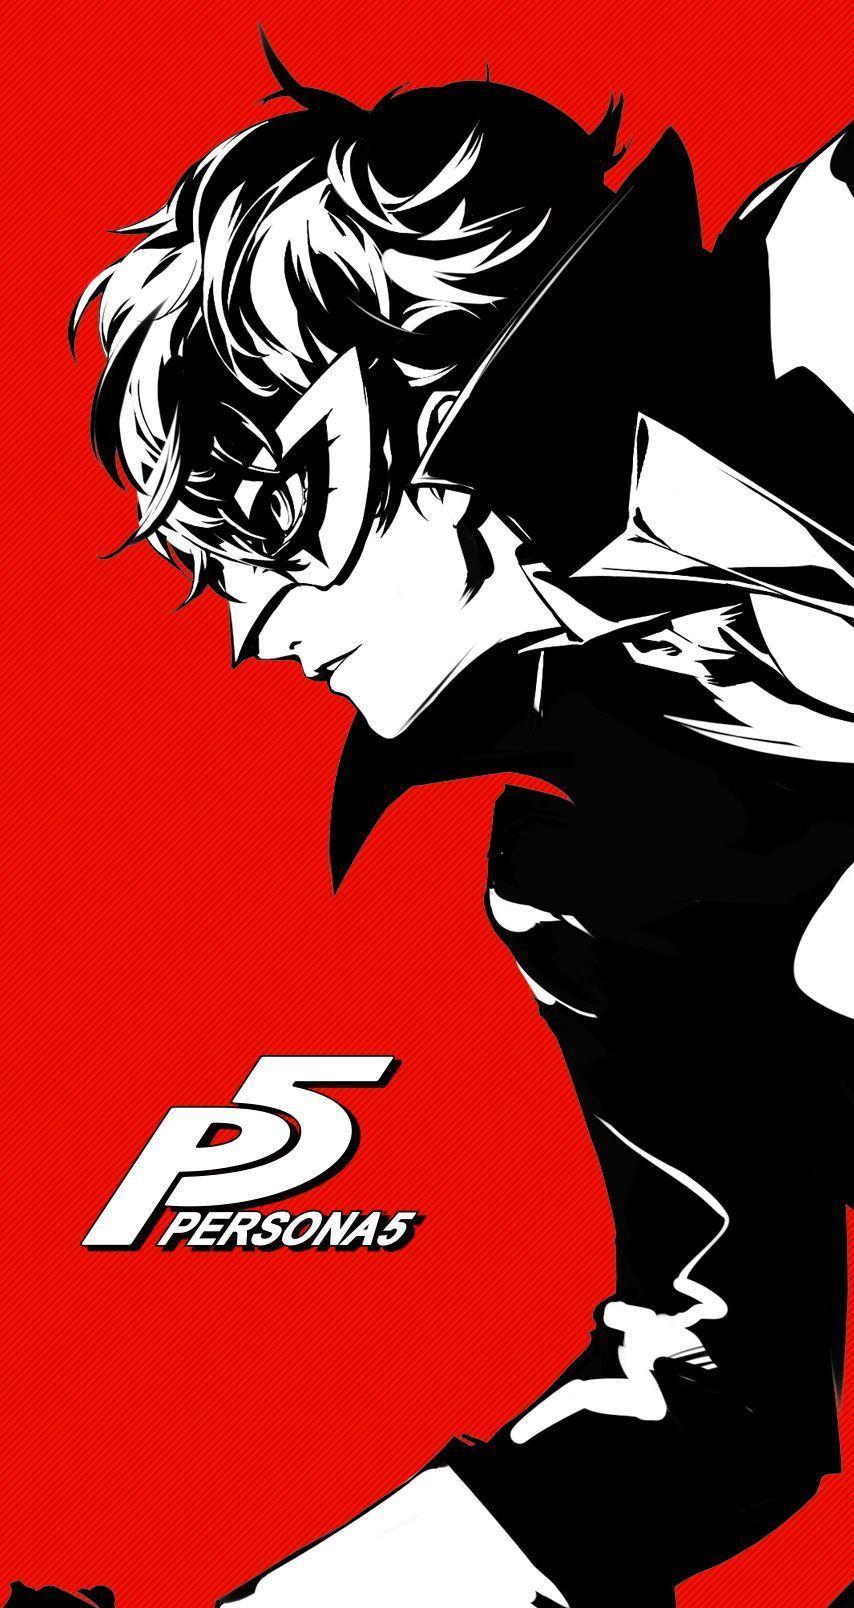 Akira Persona 5 Wallpapers - Top Free Akira Persona 5 Backgrounds ...